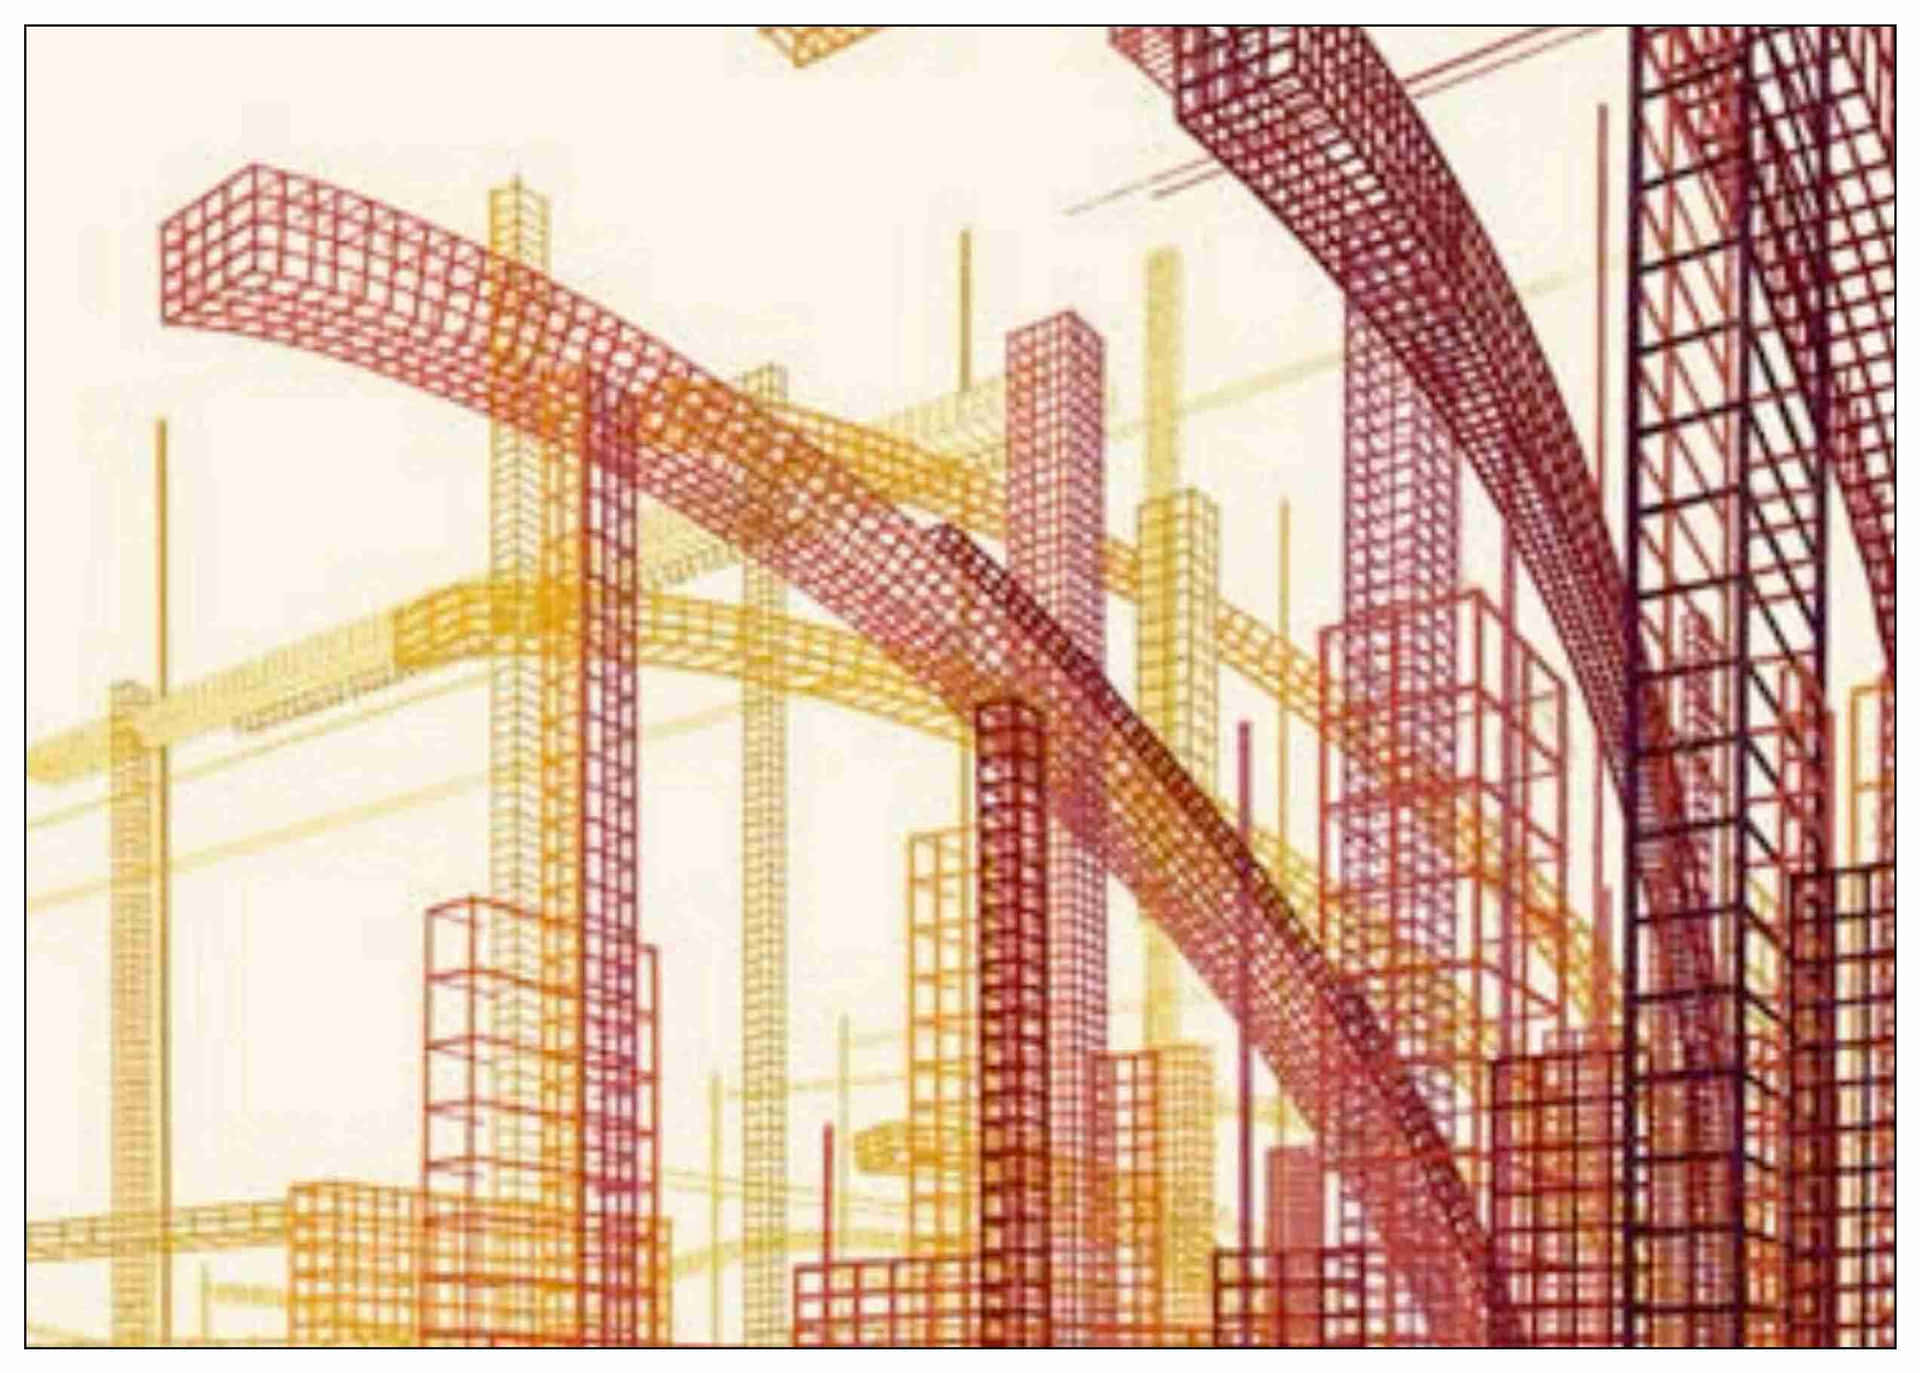 “Vibrant Lights – Constructivism” Wallpaper